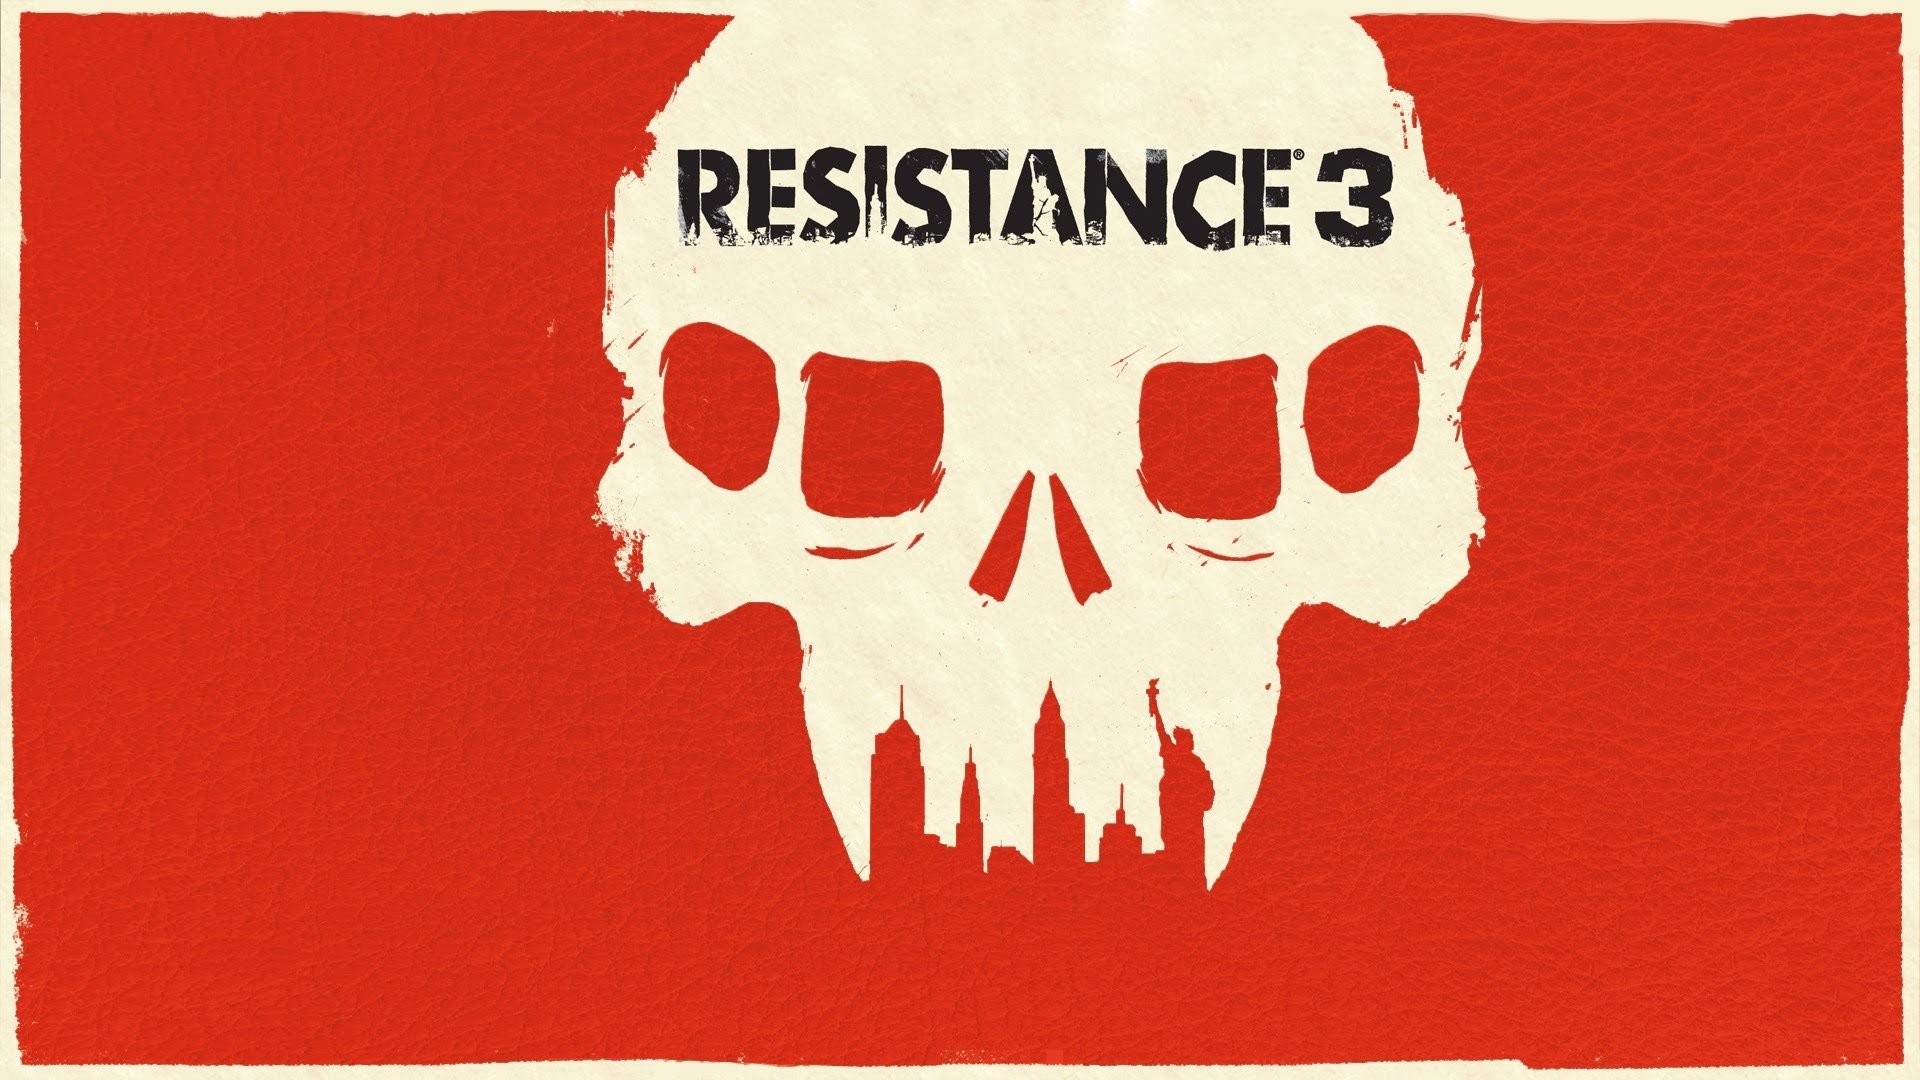 Does Resistance deserve a second chance?